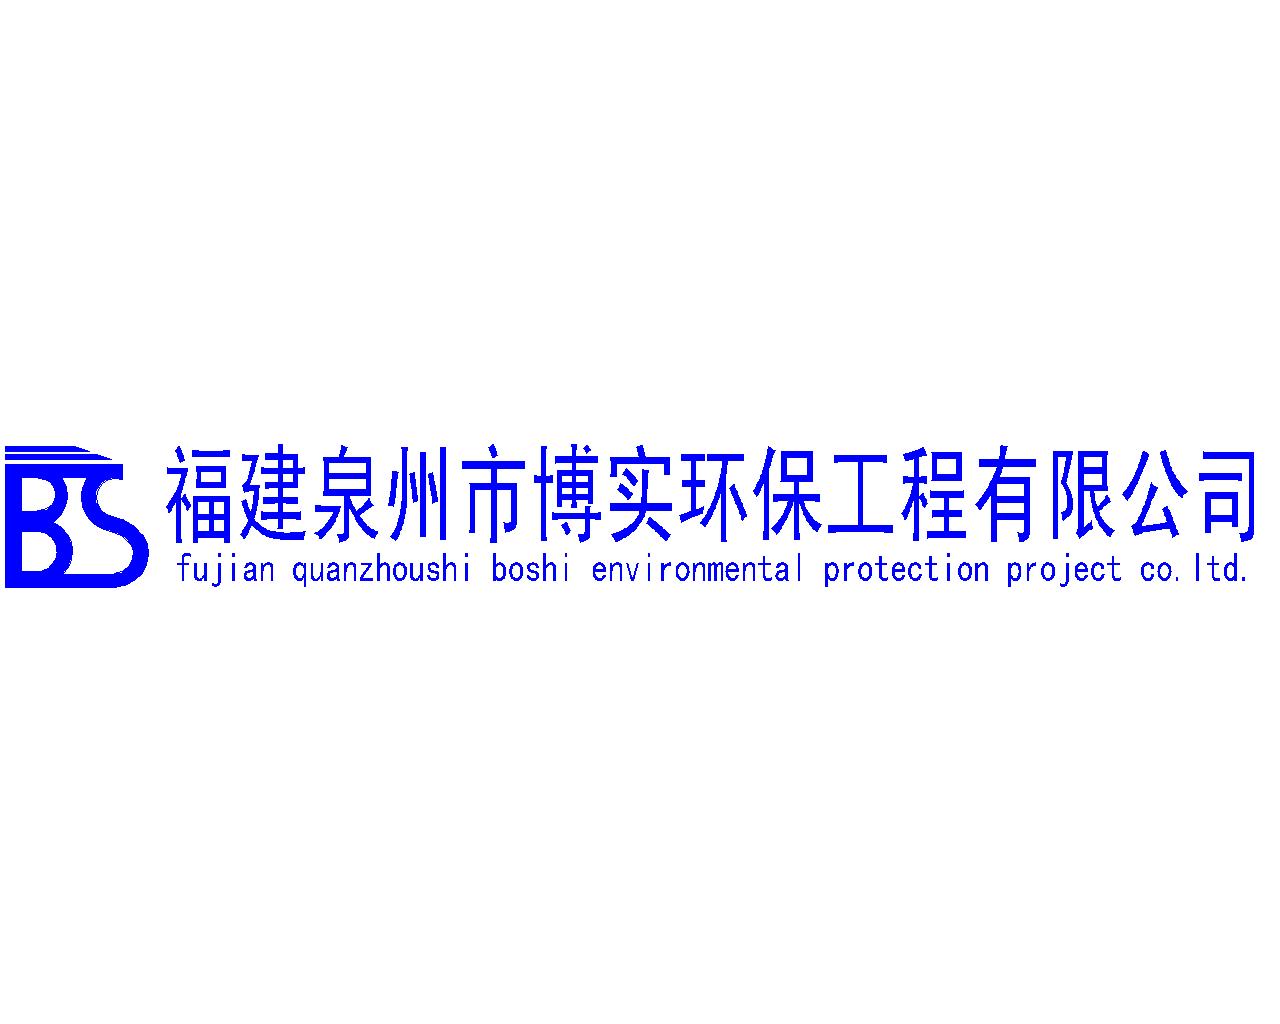 福建泉州市博实环保工程有限公司logo